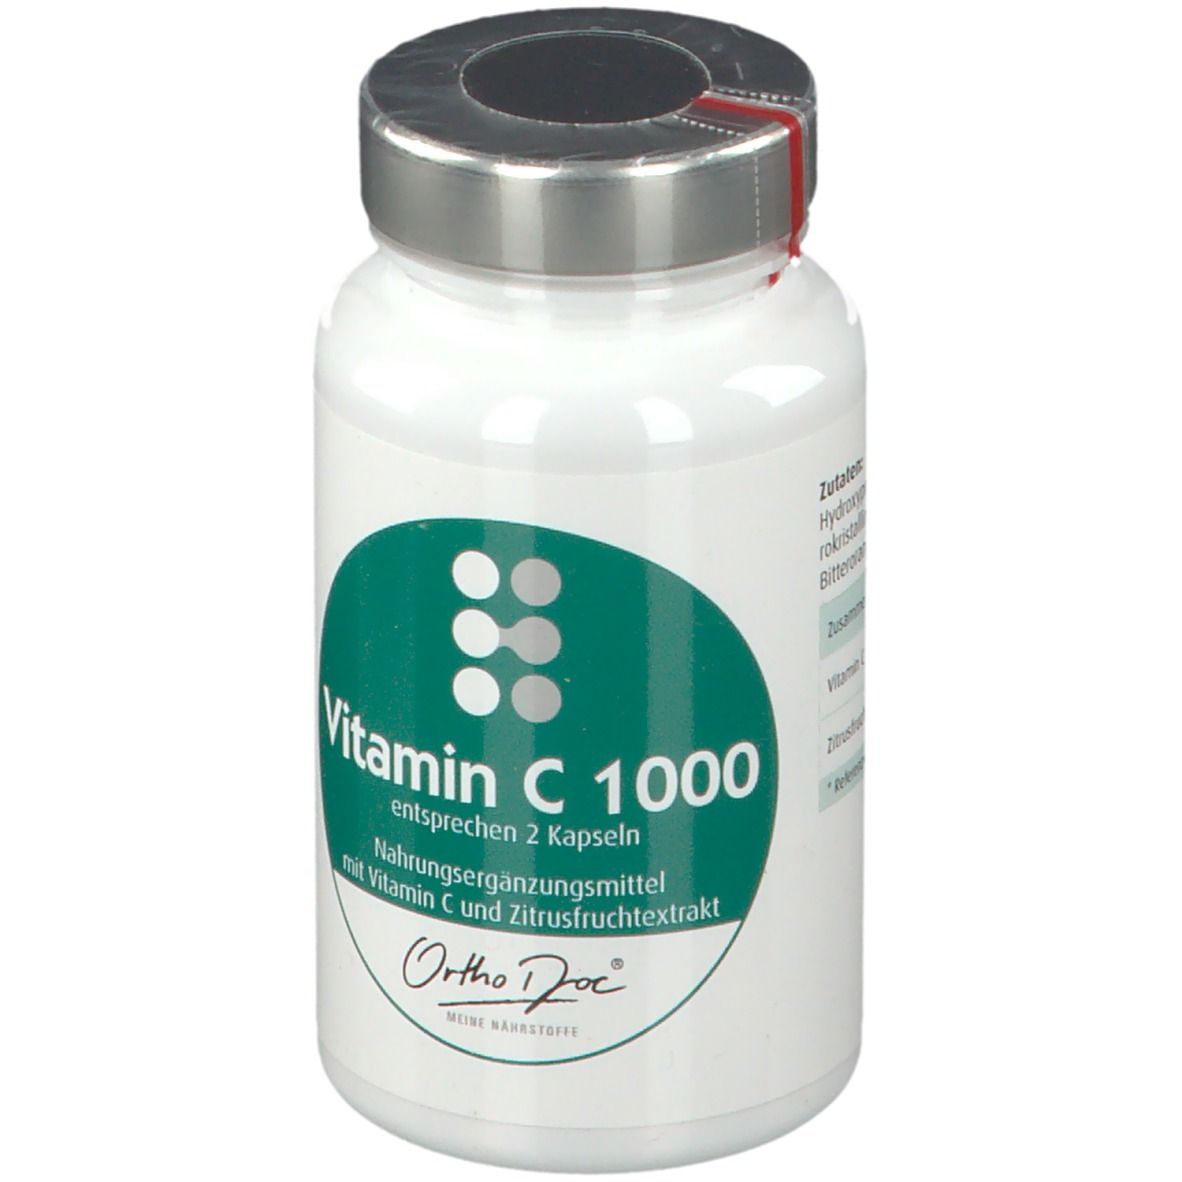 OrthoDoc® Vitamin C 1000